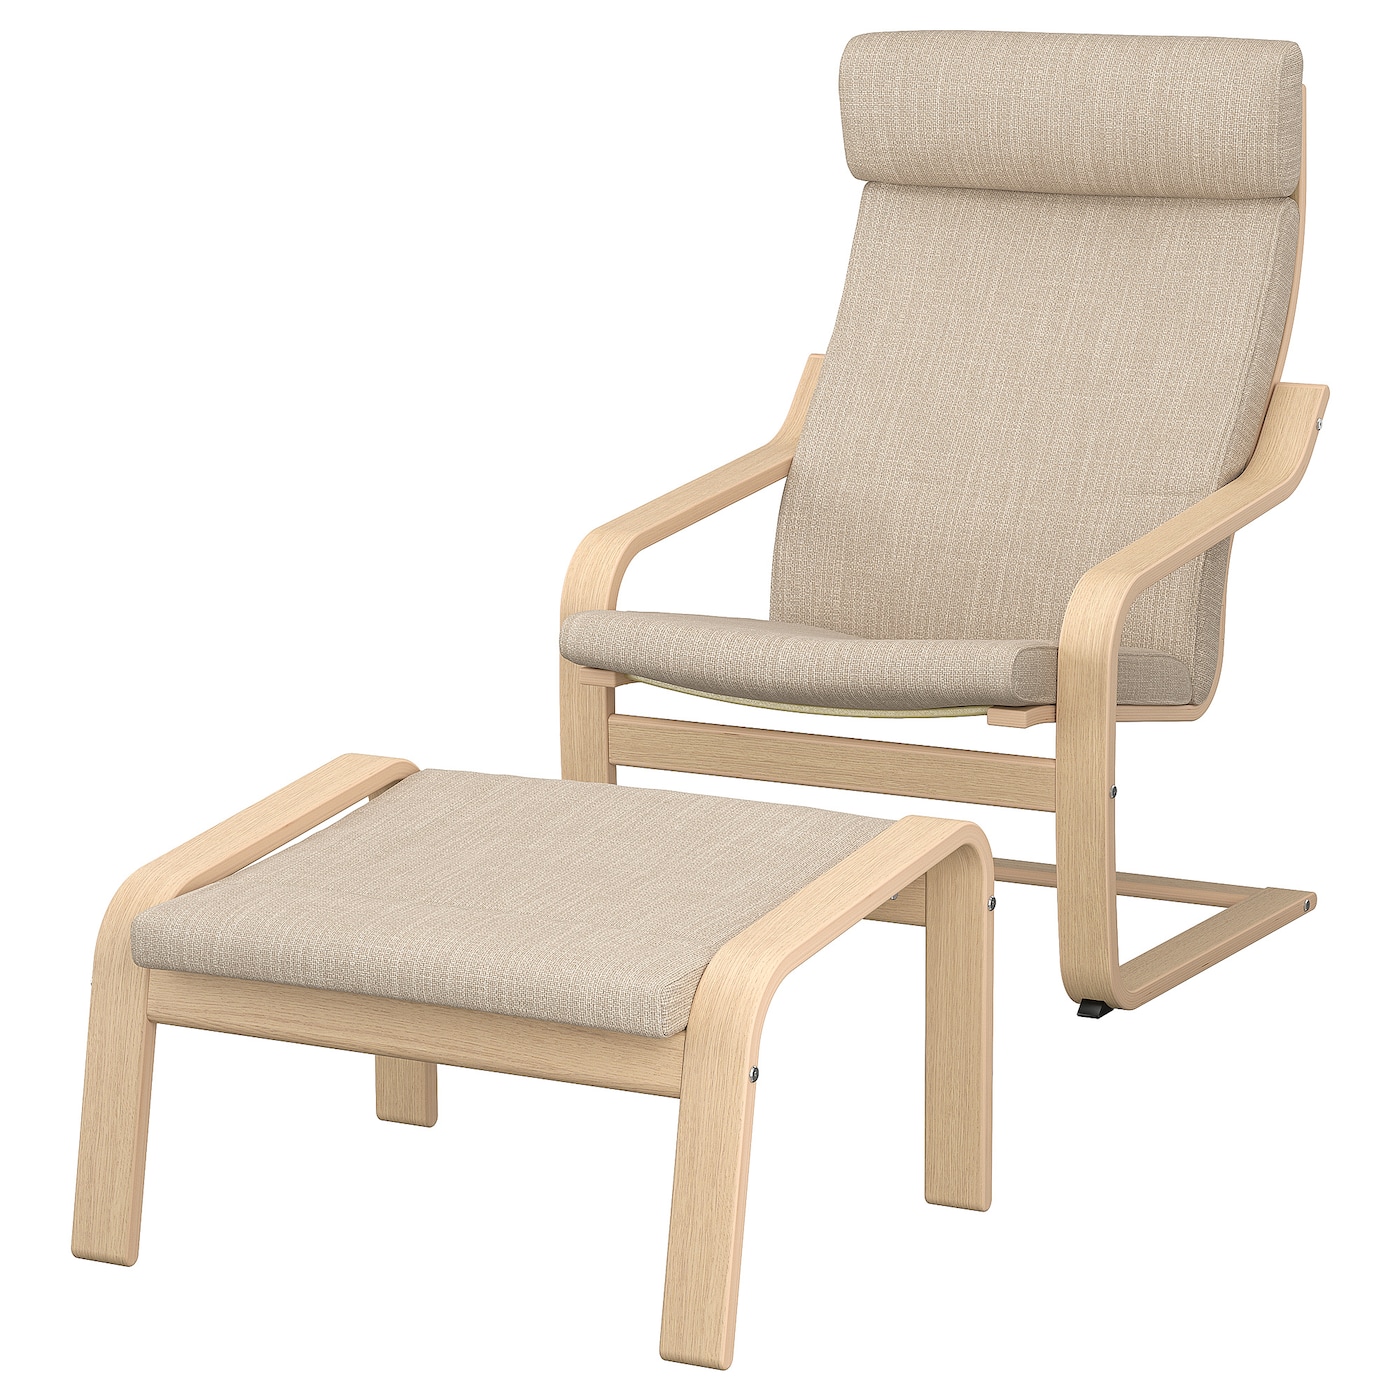 ПОЭНГ Кресло и подставка для ног, дубовый шпон светлый/Хилларед бежевый POÄNG IKEA